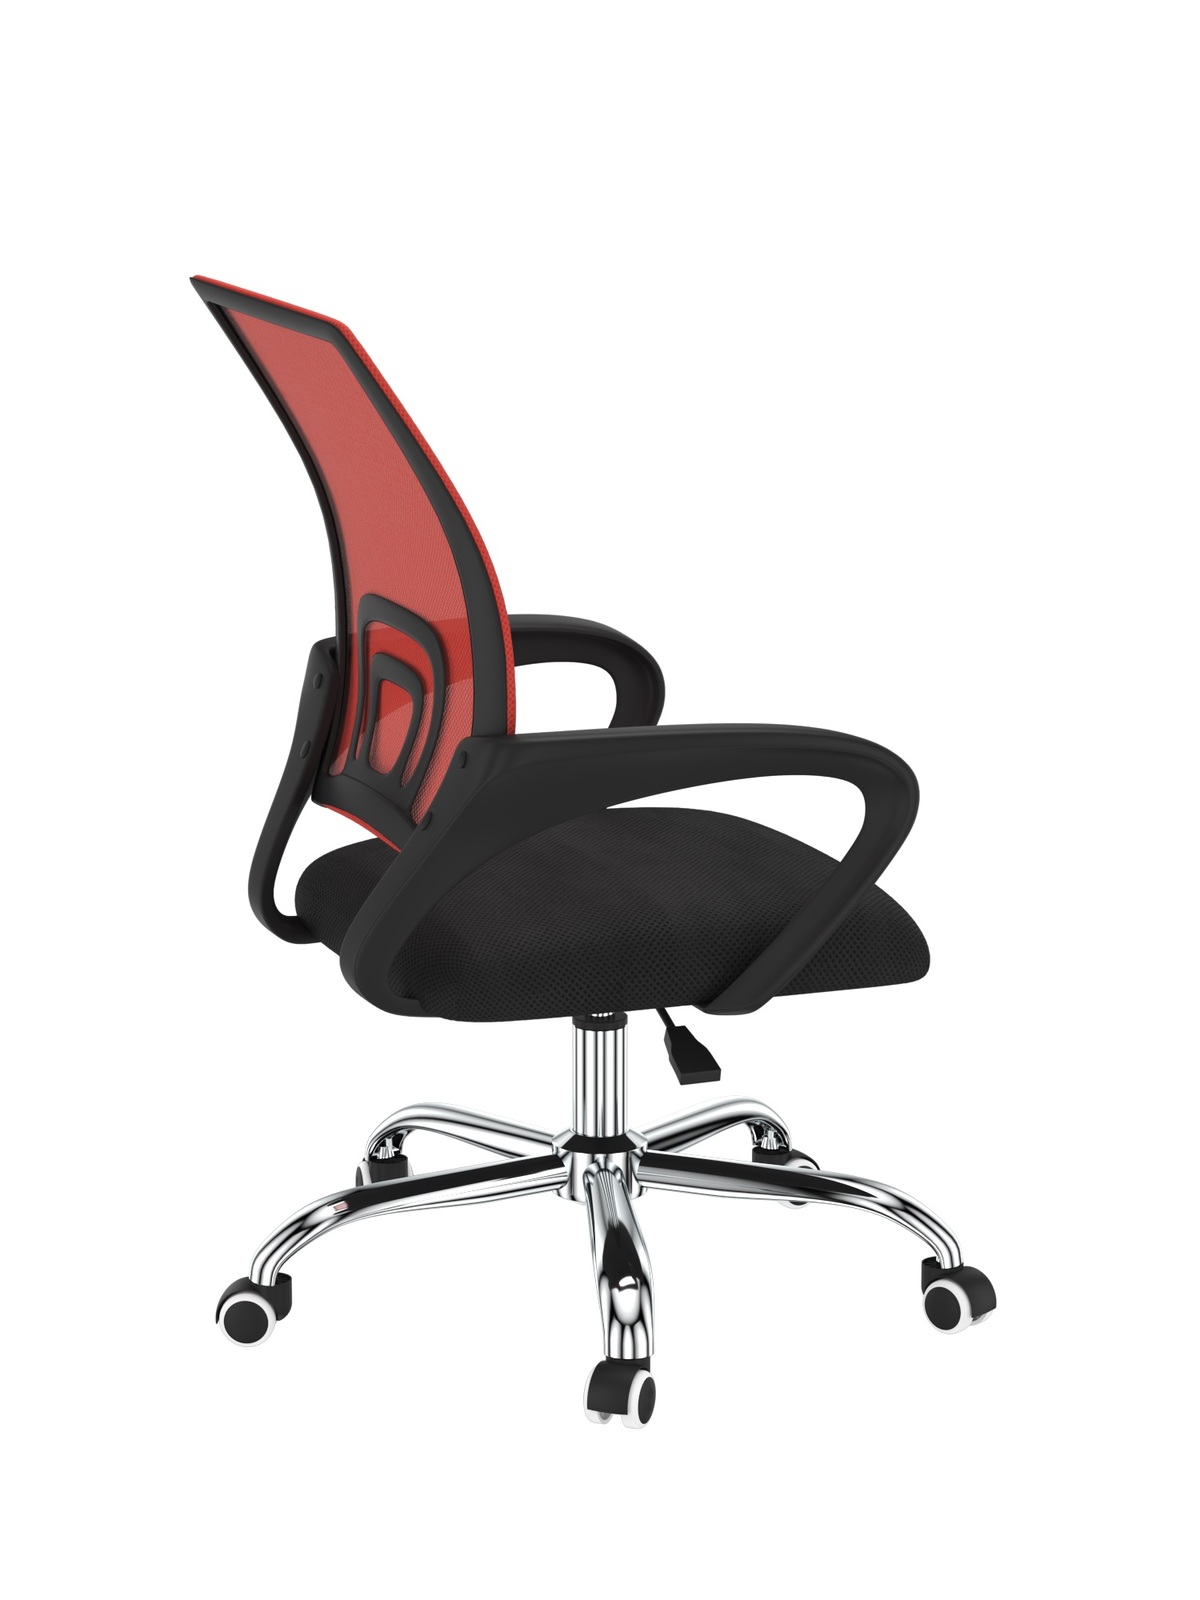 Офисное кресло byROOM Staff red VC6001-R